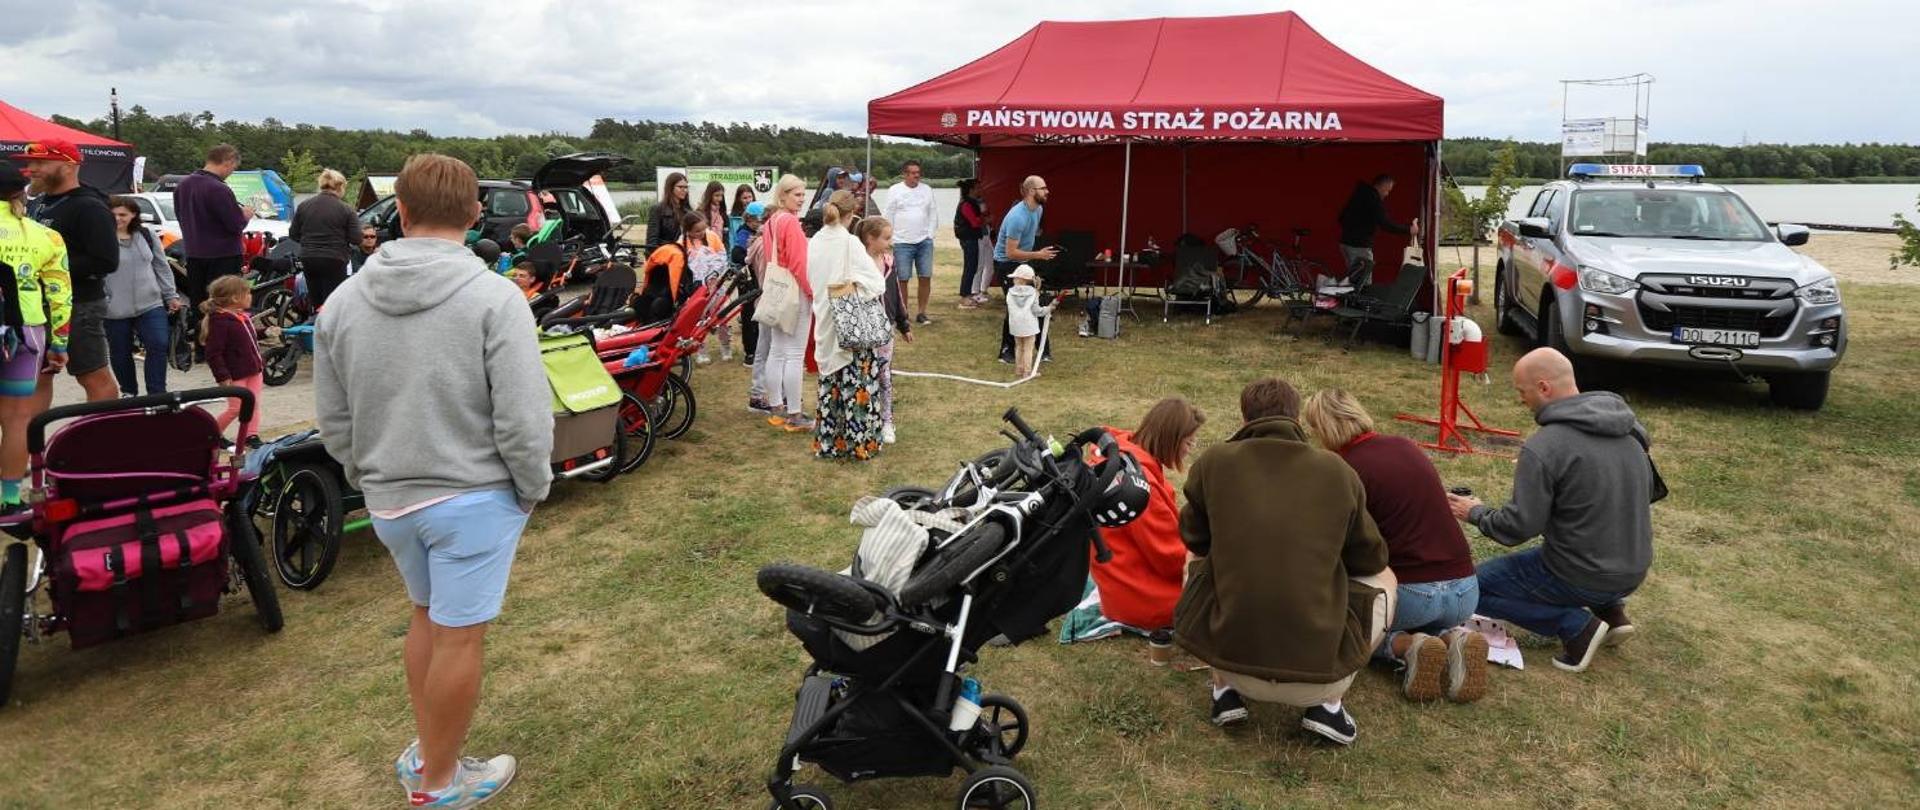 Na zdjęciu widoczny namiot PSP oraz samochód rozpoznawczo ratowniczy oraz ludzie korzystający z atrakcji przygotowanych przez PSP. 